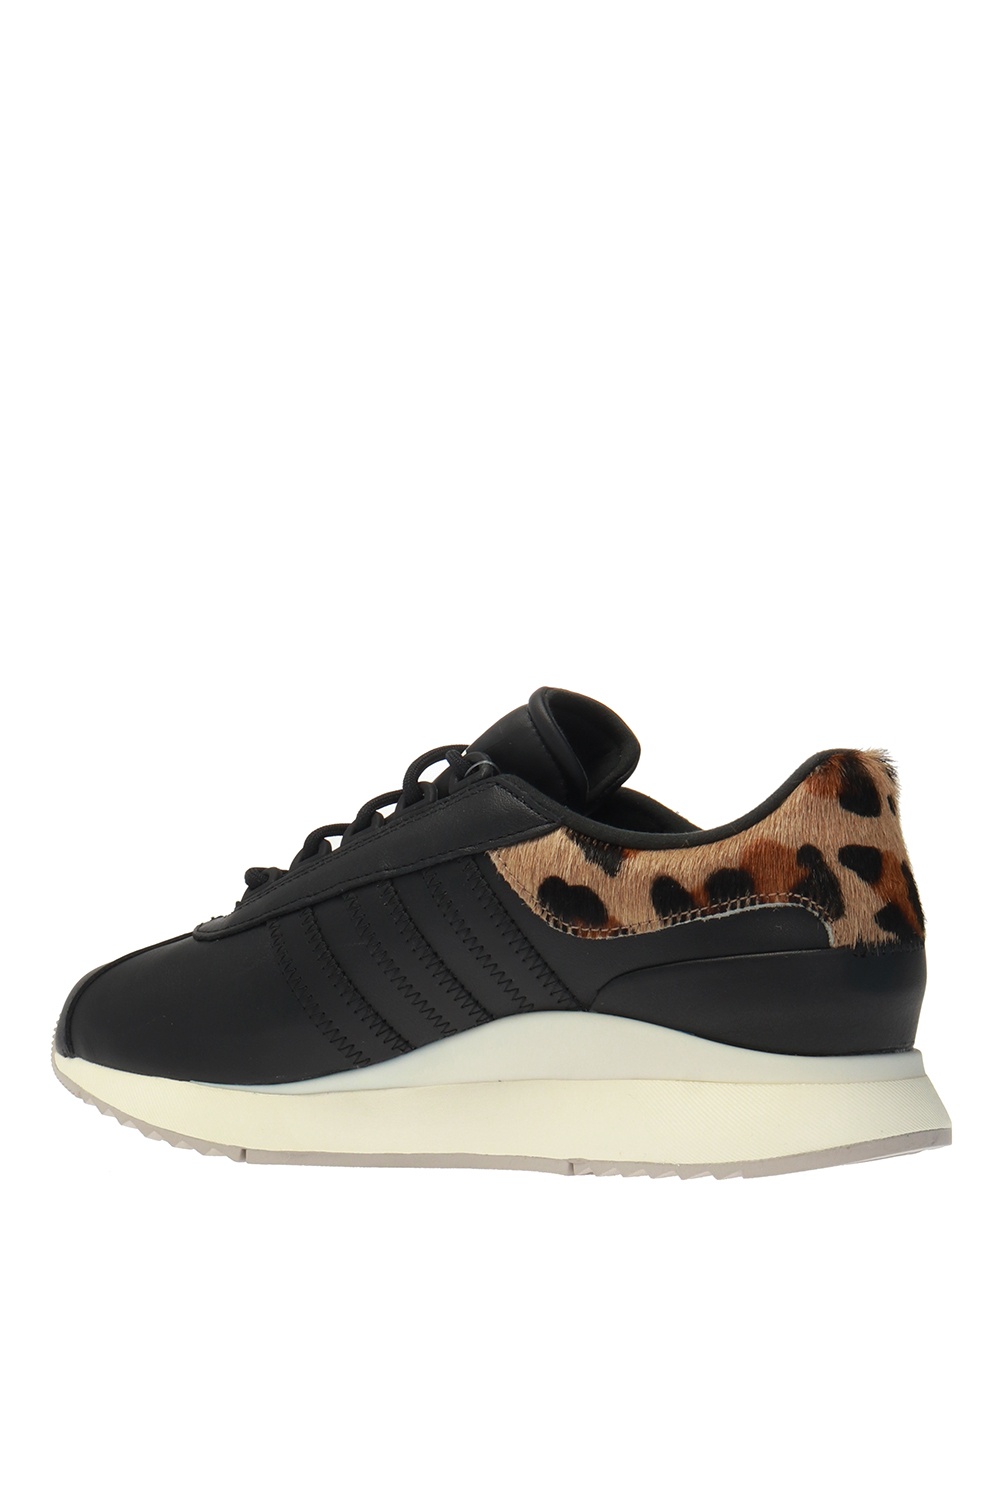 adidas andridge leopard